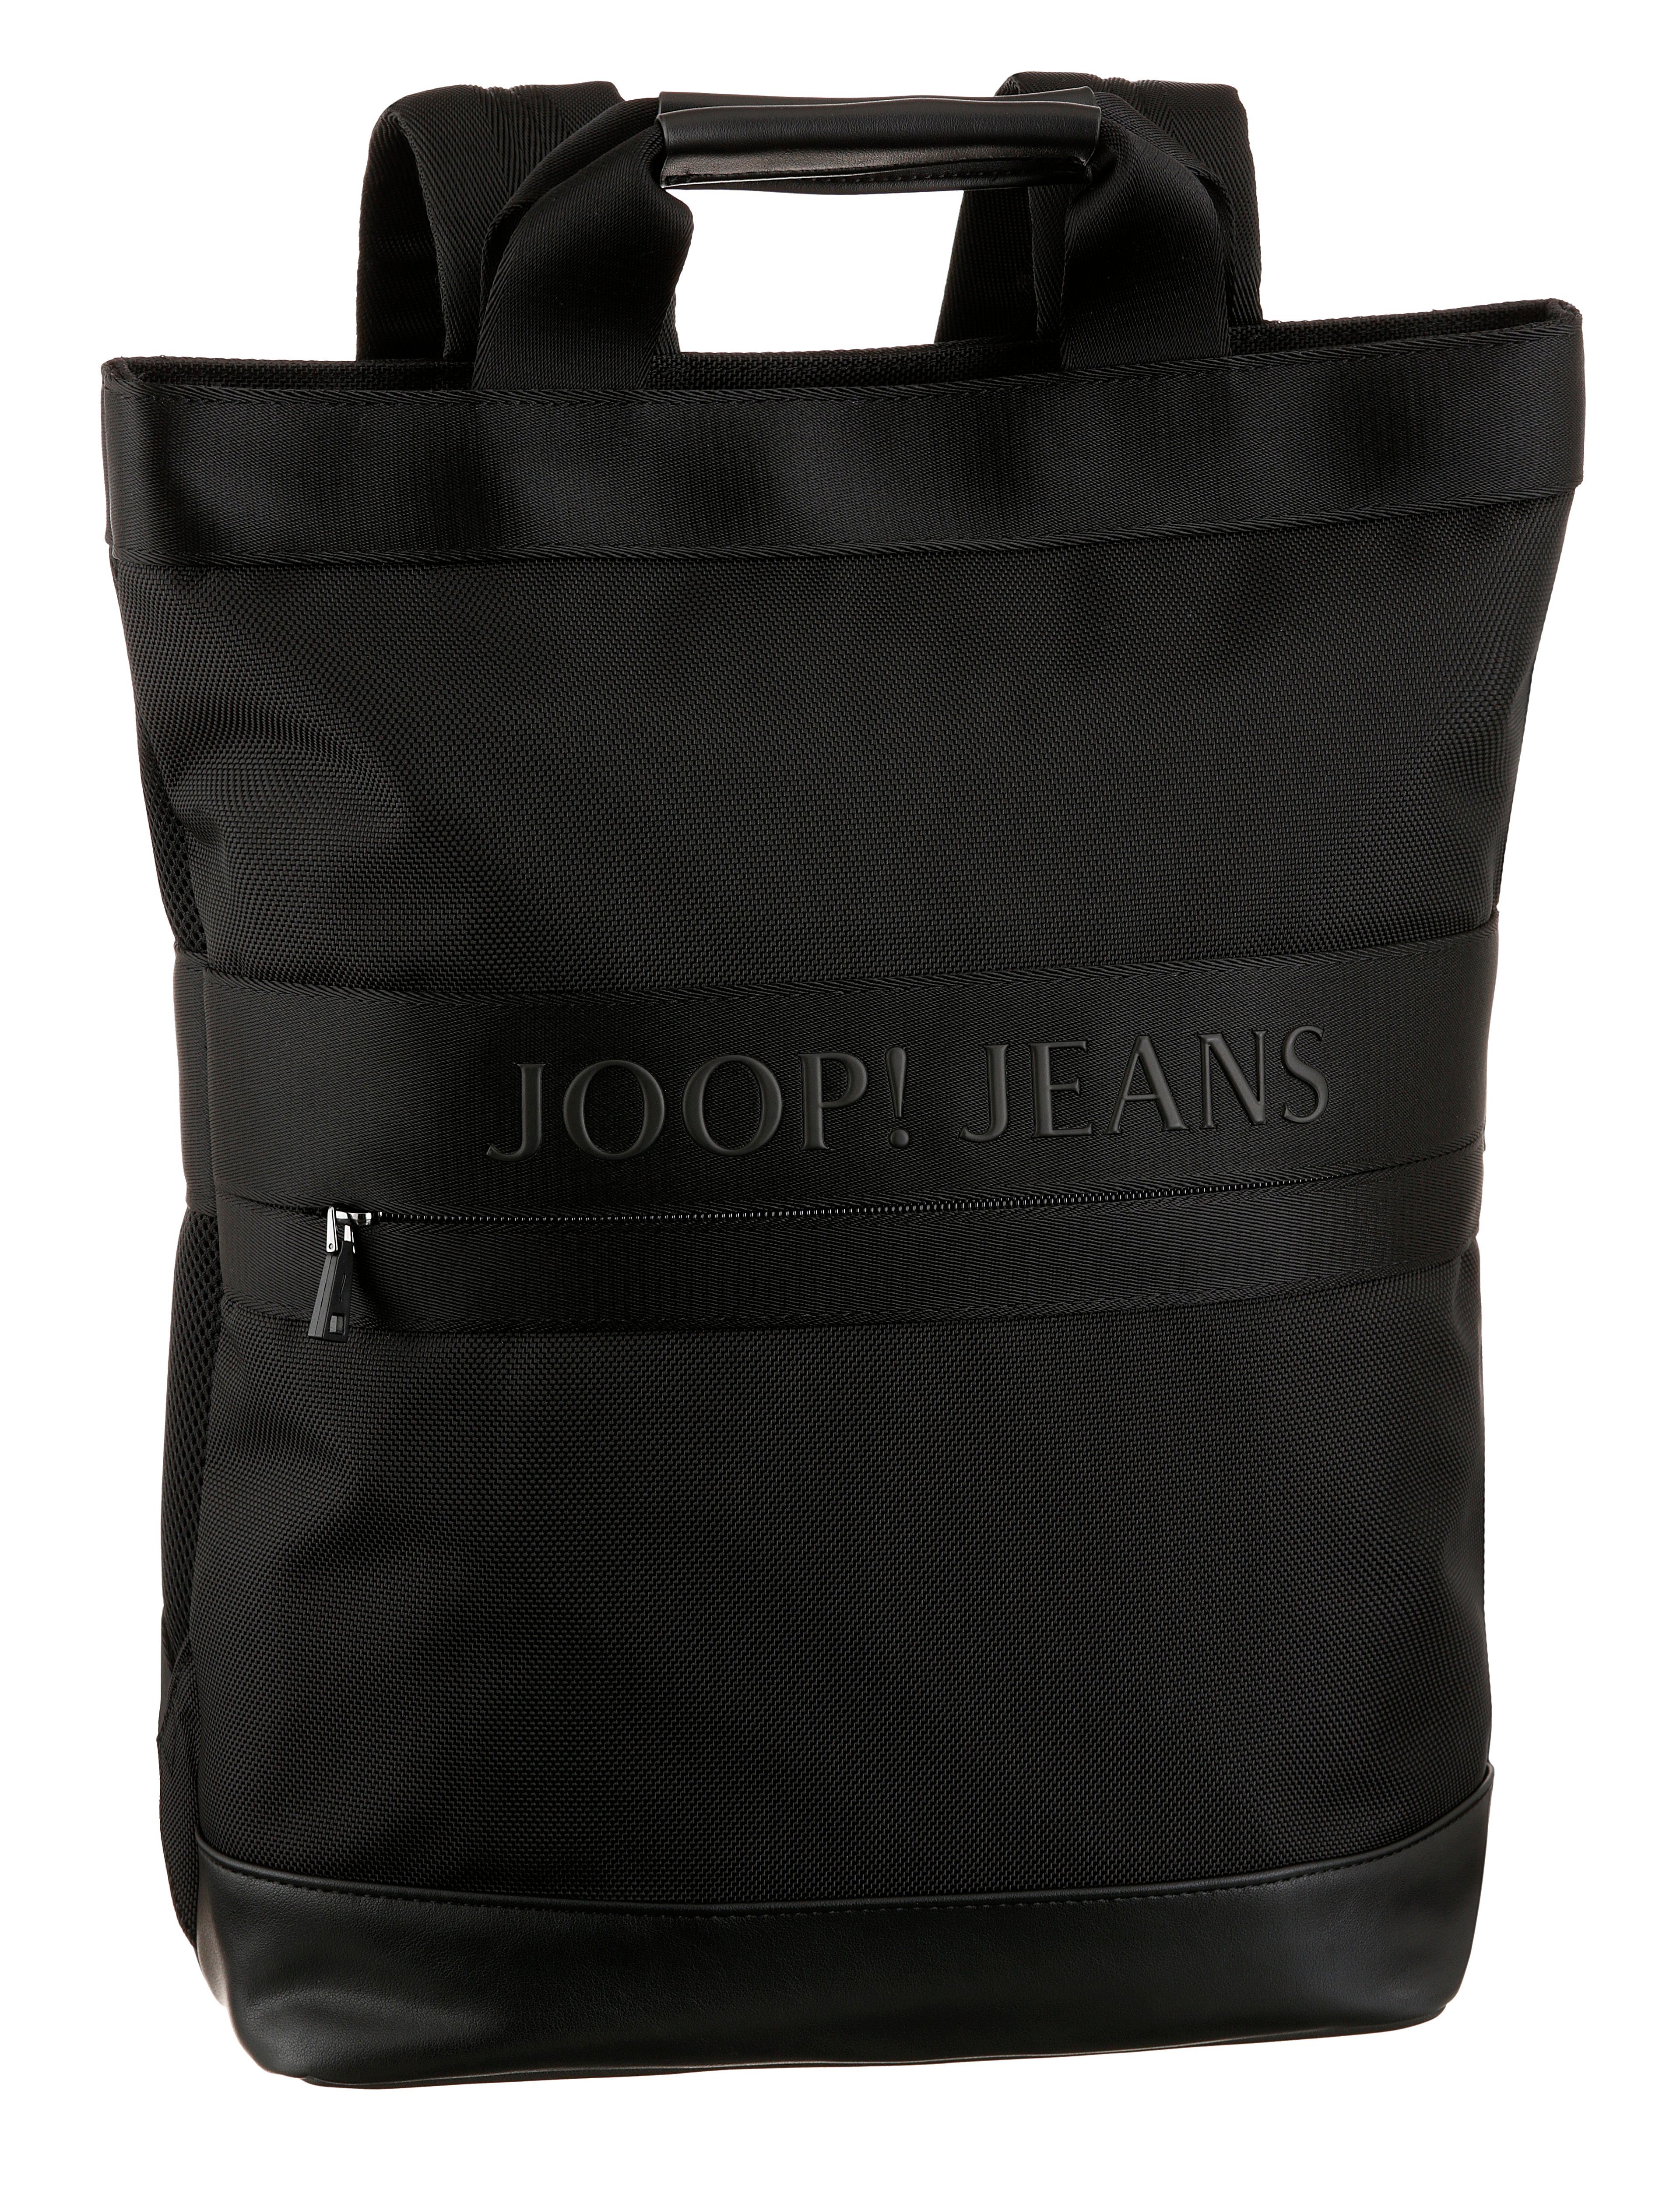 Joop Jeans Cityrucksack mit modica black Reißverschluss-Vortasche svz, backpack falk